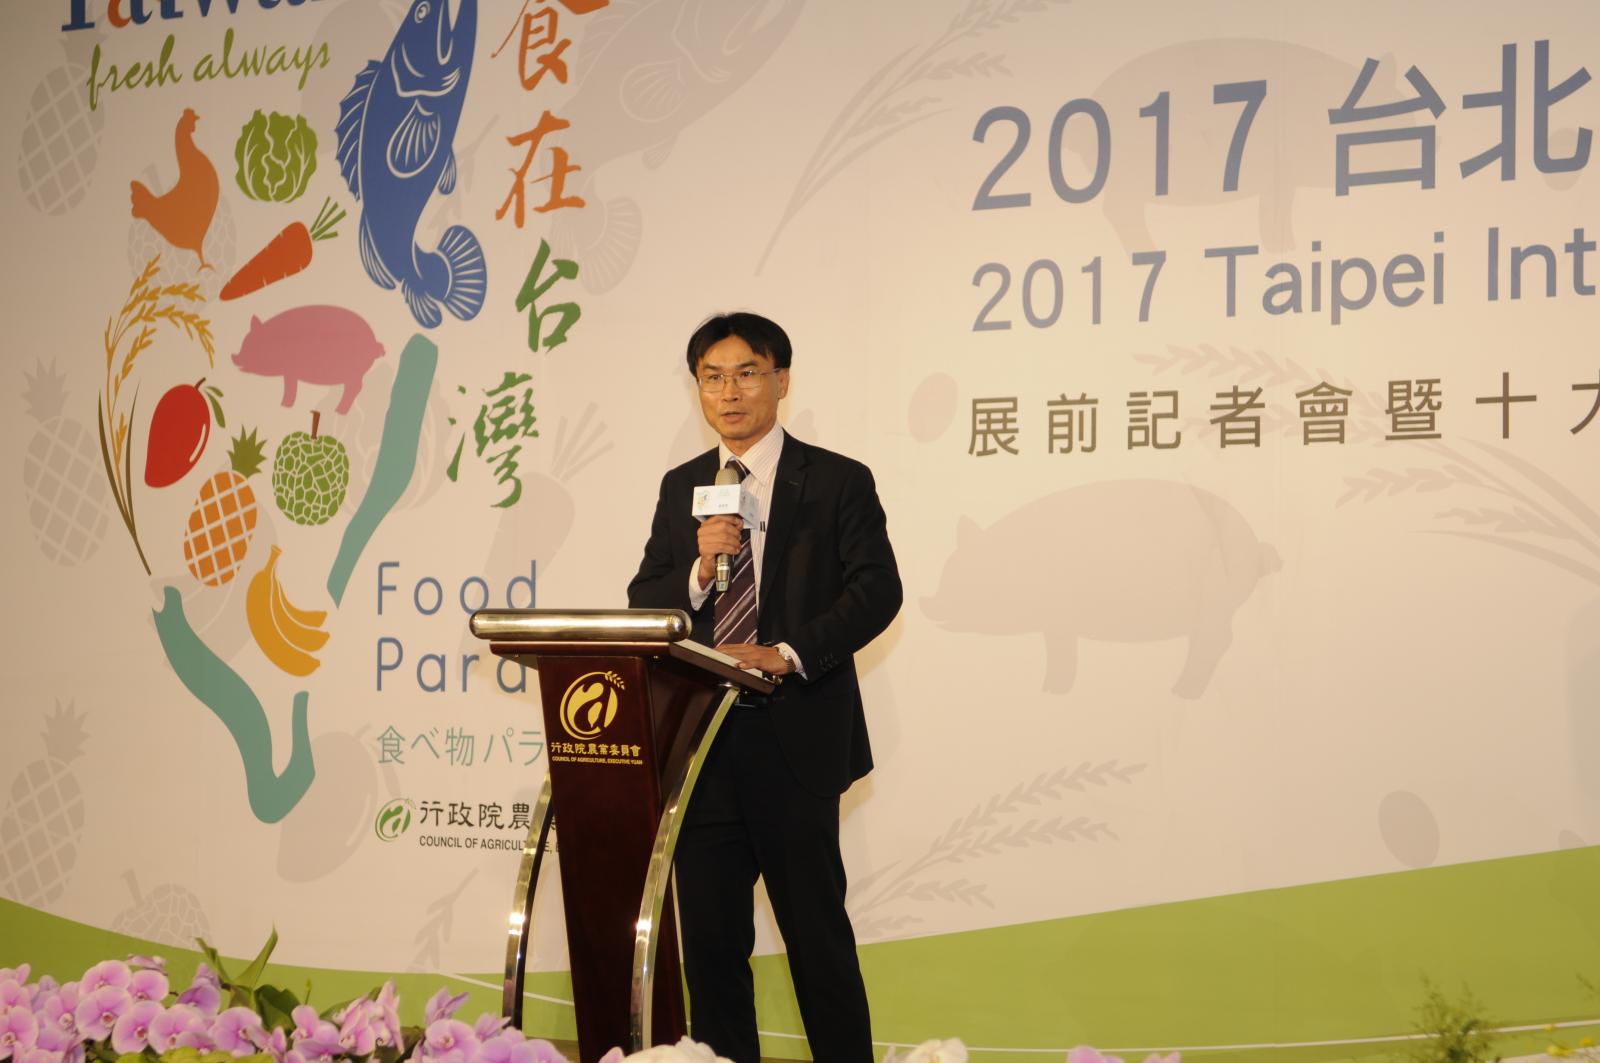 陳副主委勉勵這些展現臺灣農產食品創新實力與國際競爭力的優秀廠商，更期待他們的產品能為我國農產品行銷國際創造嶄新氣象